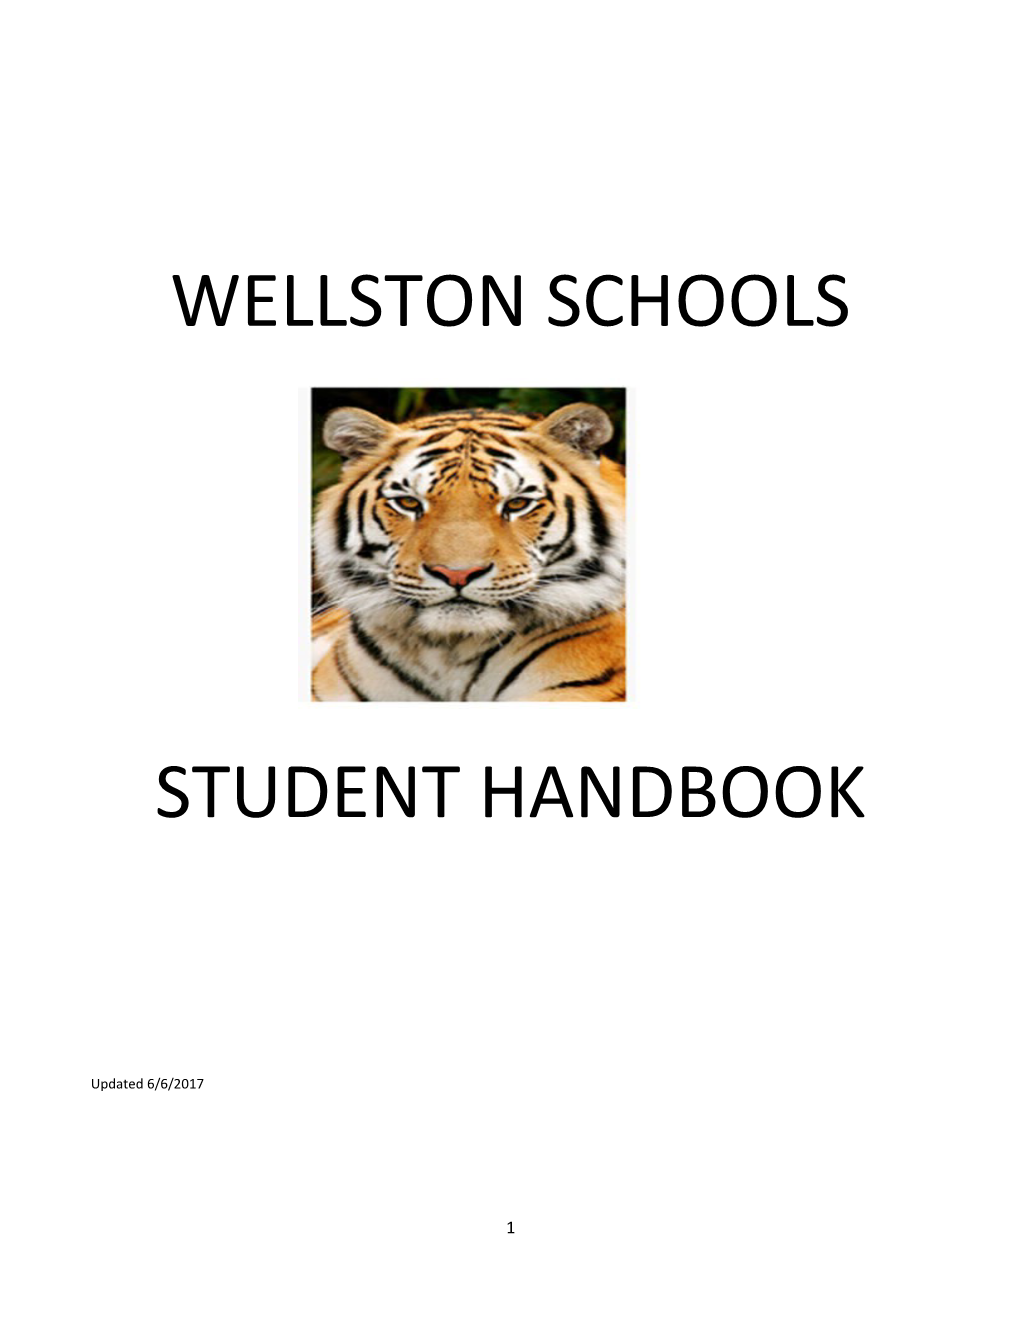 Wellston Schools